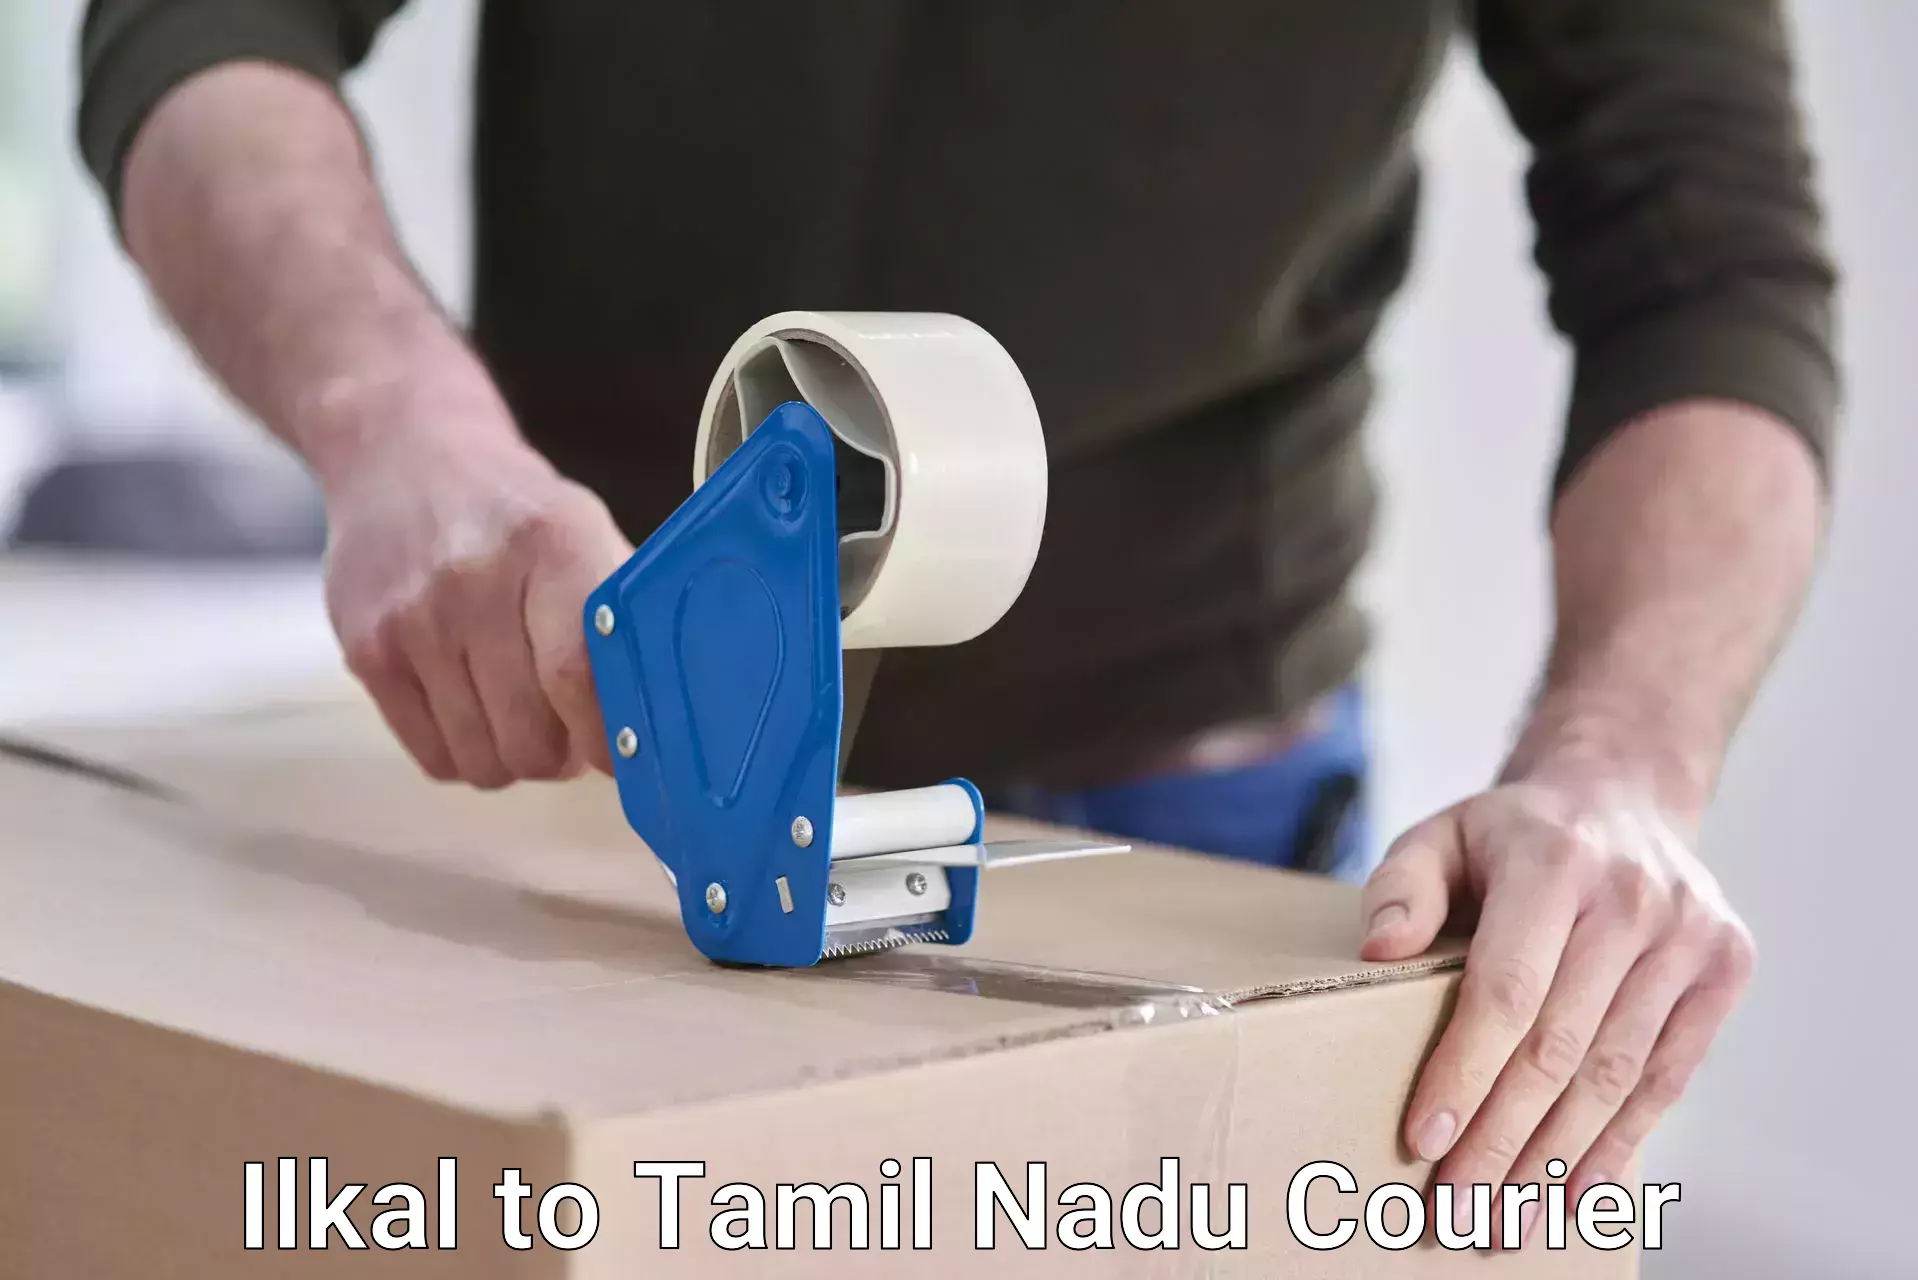 Expedited parcel delivery Ilkal to Tamil Nadu